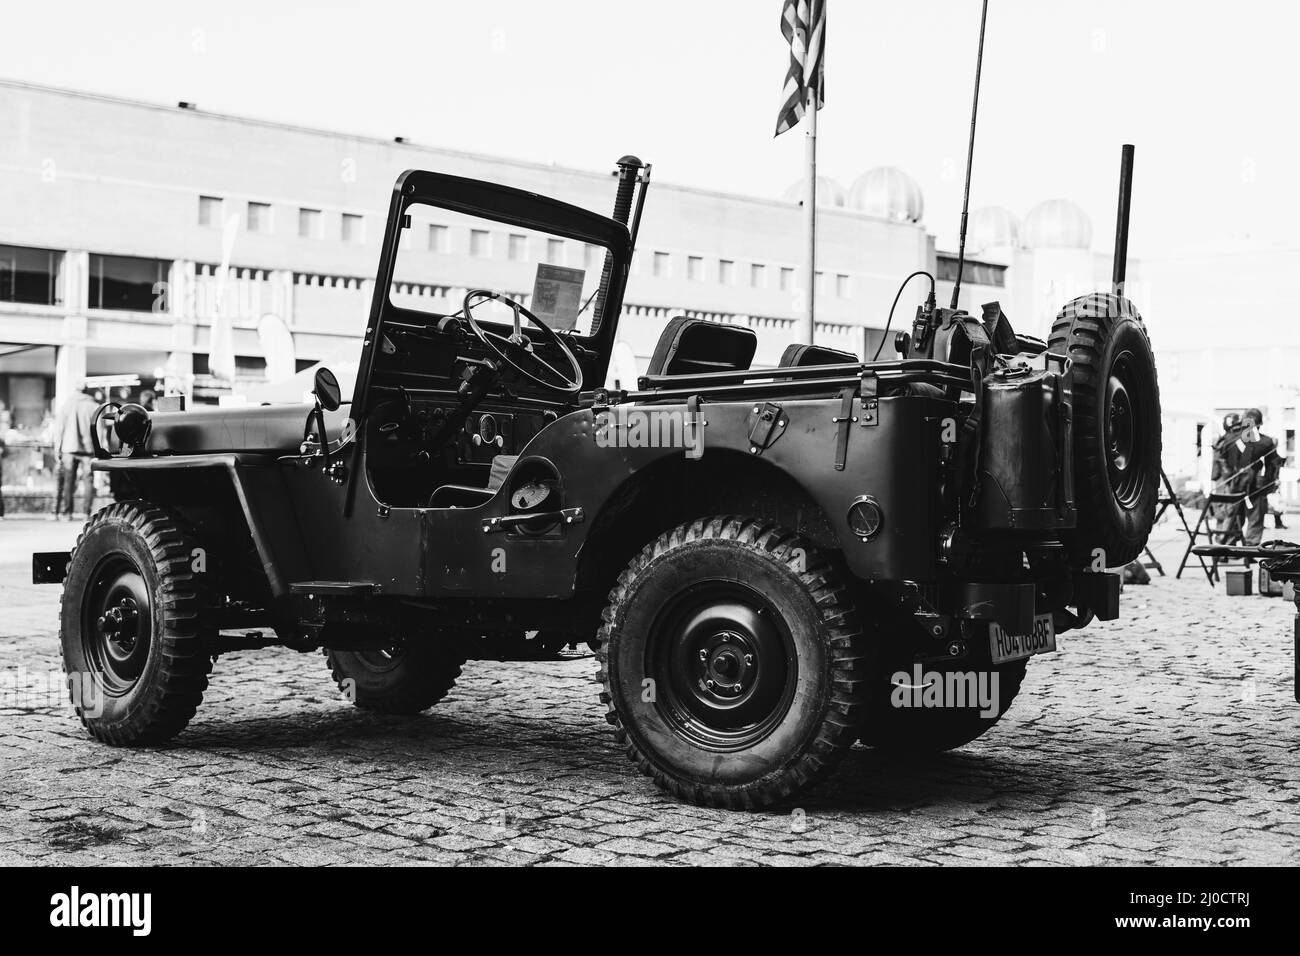 Gros plan d'une vieille voiture de sport militaire d'époque Jeep Willys M38 en niveaux de gris Banque D'Images